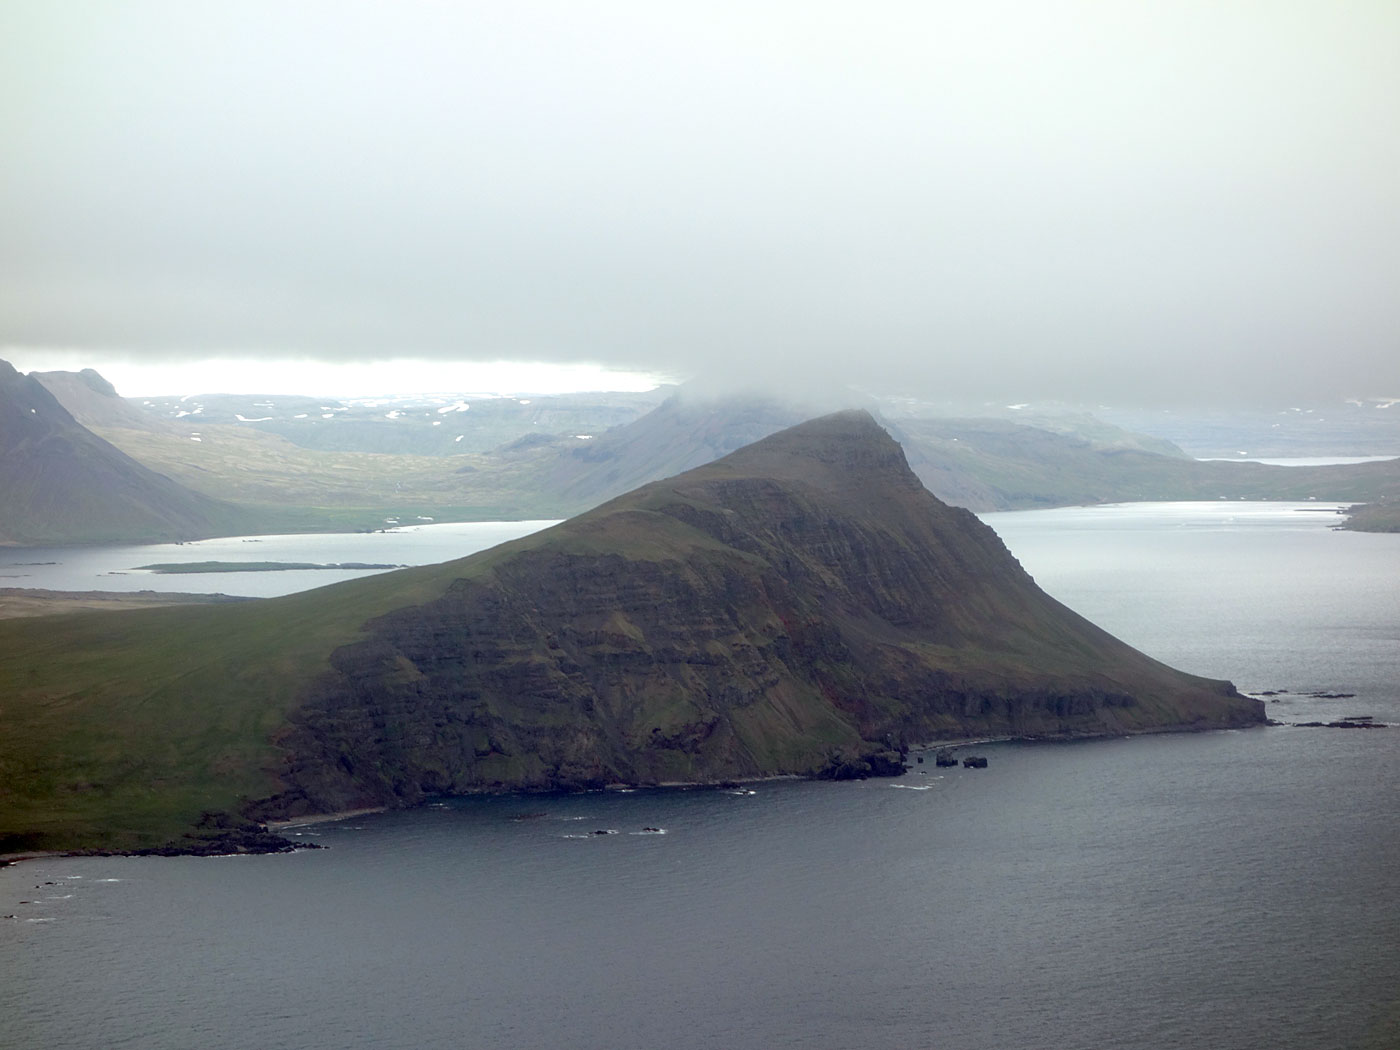 Between Djúpavík and Reykjavík. A flight. - Reykjarneshyrna mountain. (1 July 2013)